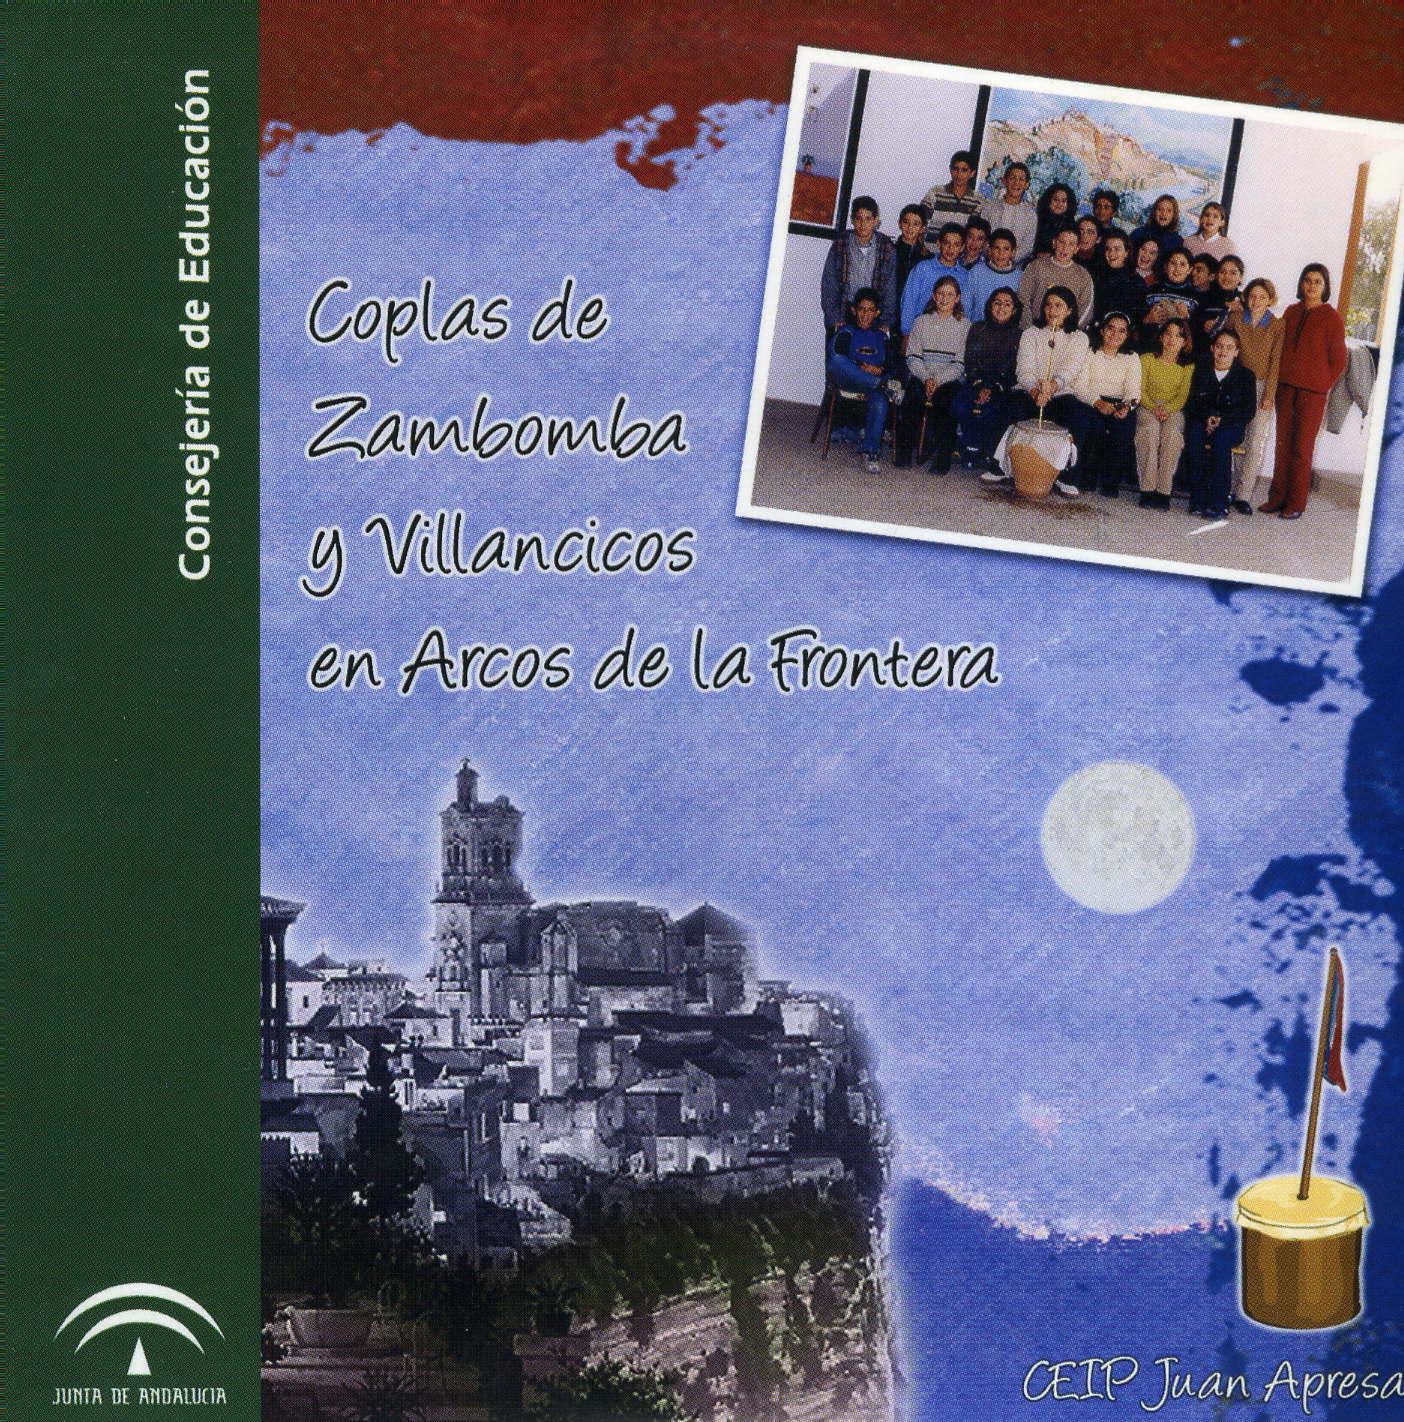 CD-ROM "Coplas de zambomba y villancicos en Arcos de la Frontera"